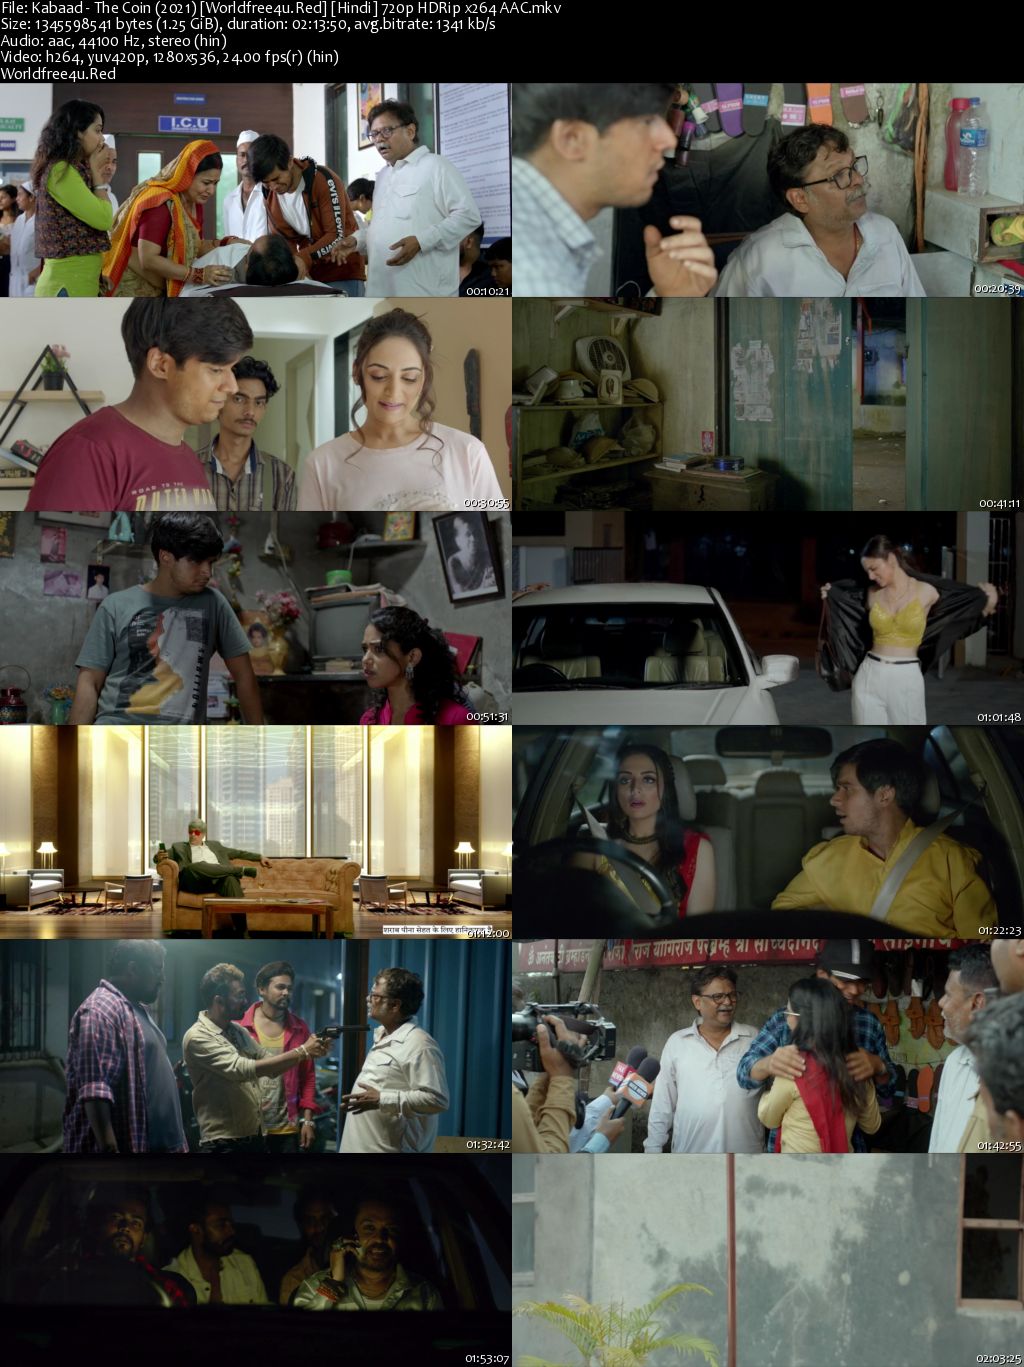 Kabaad: The Coin 2021 Hindi Movie Download || HDRip 720p